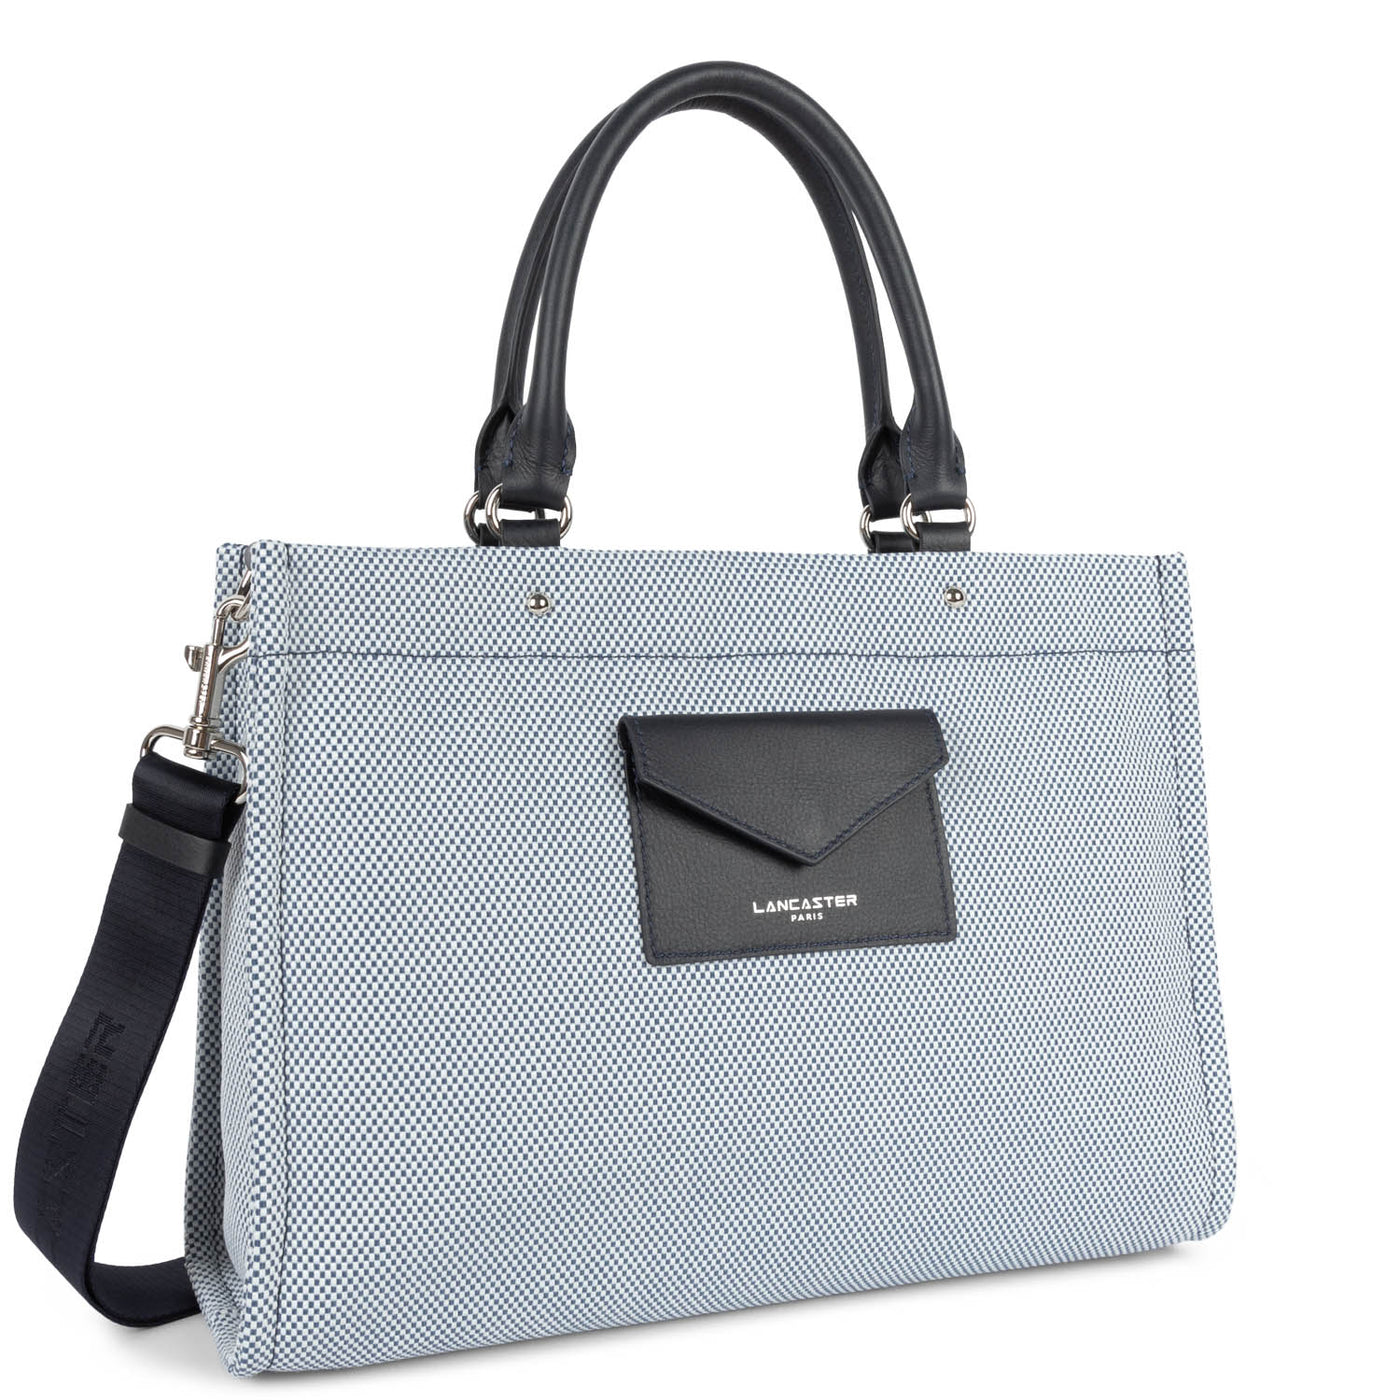 m handbag - canvas conscious #couleur_bleu-fonc